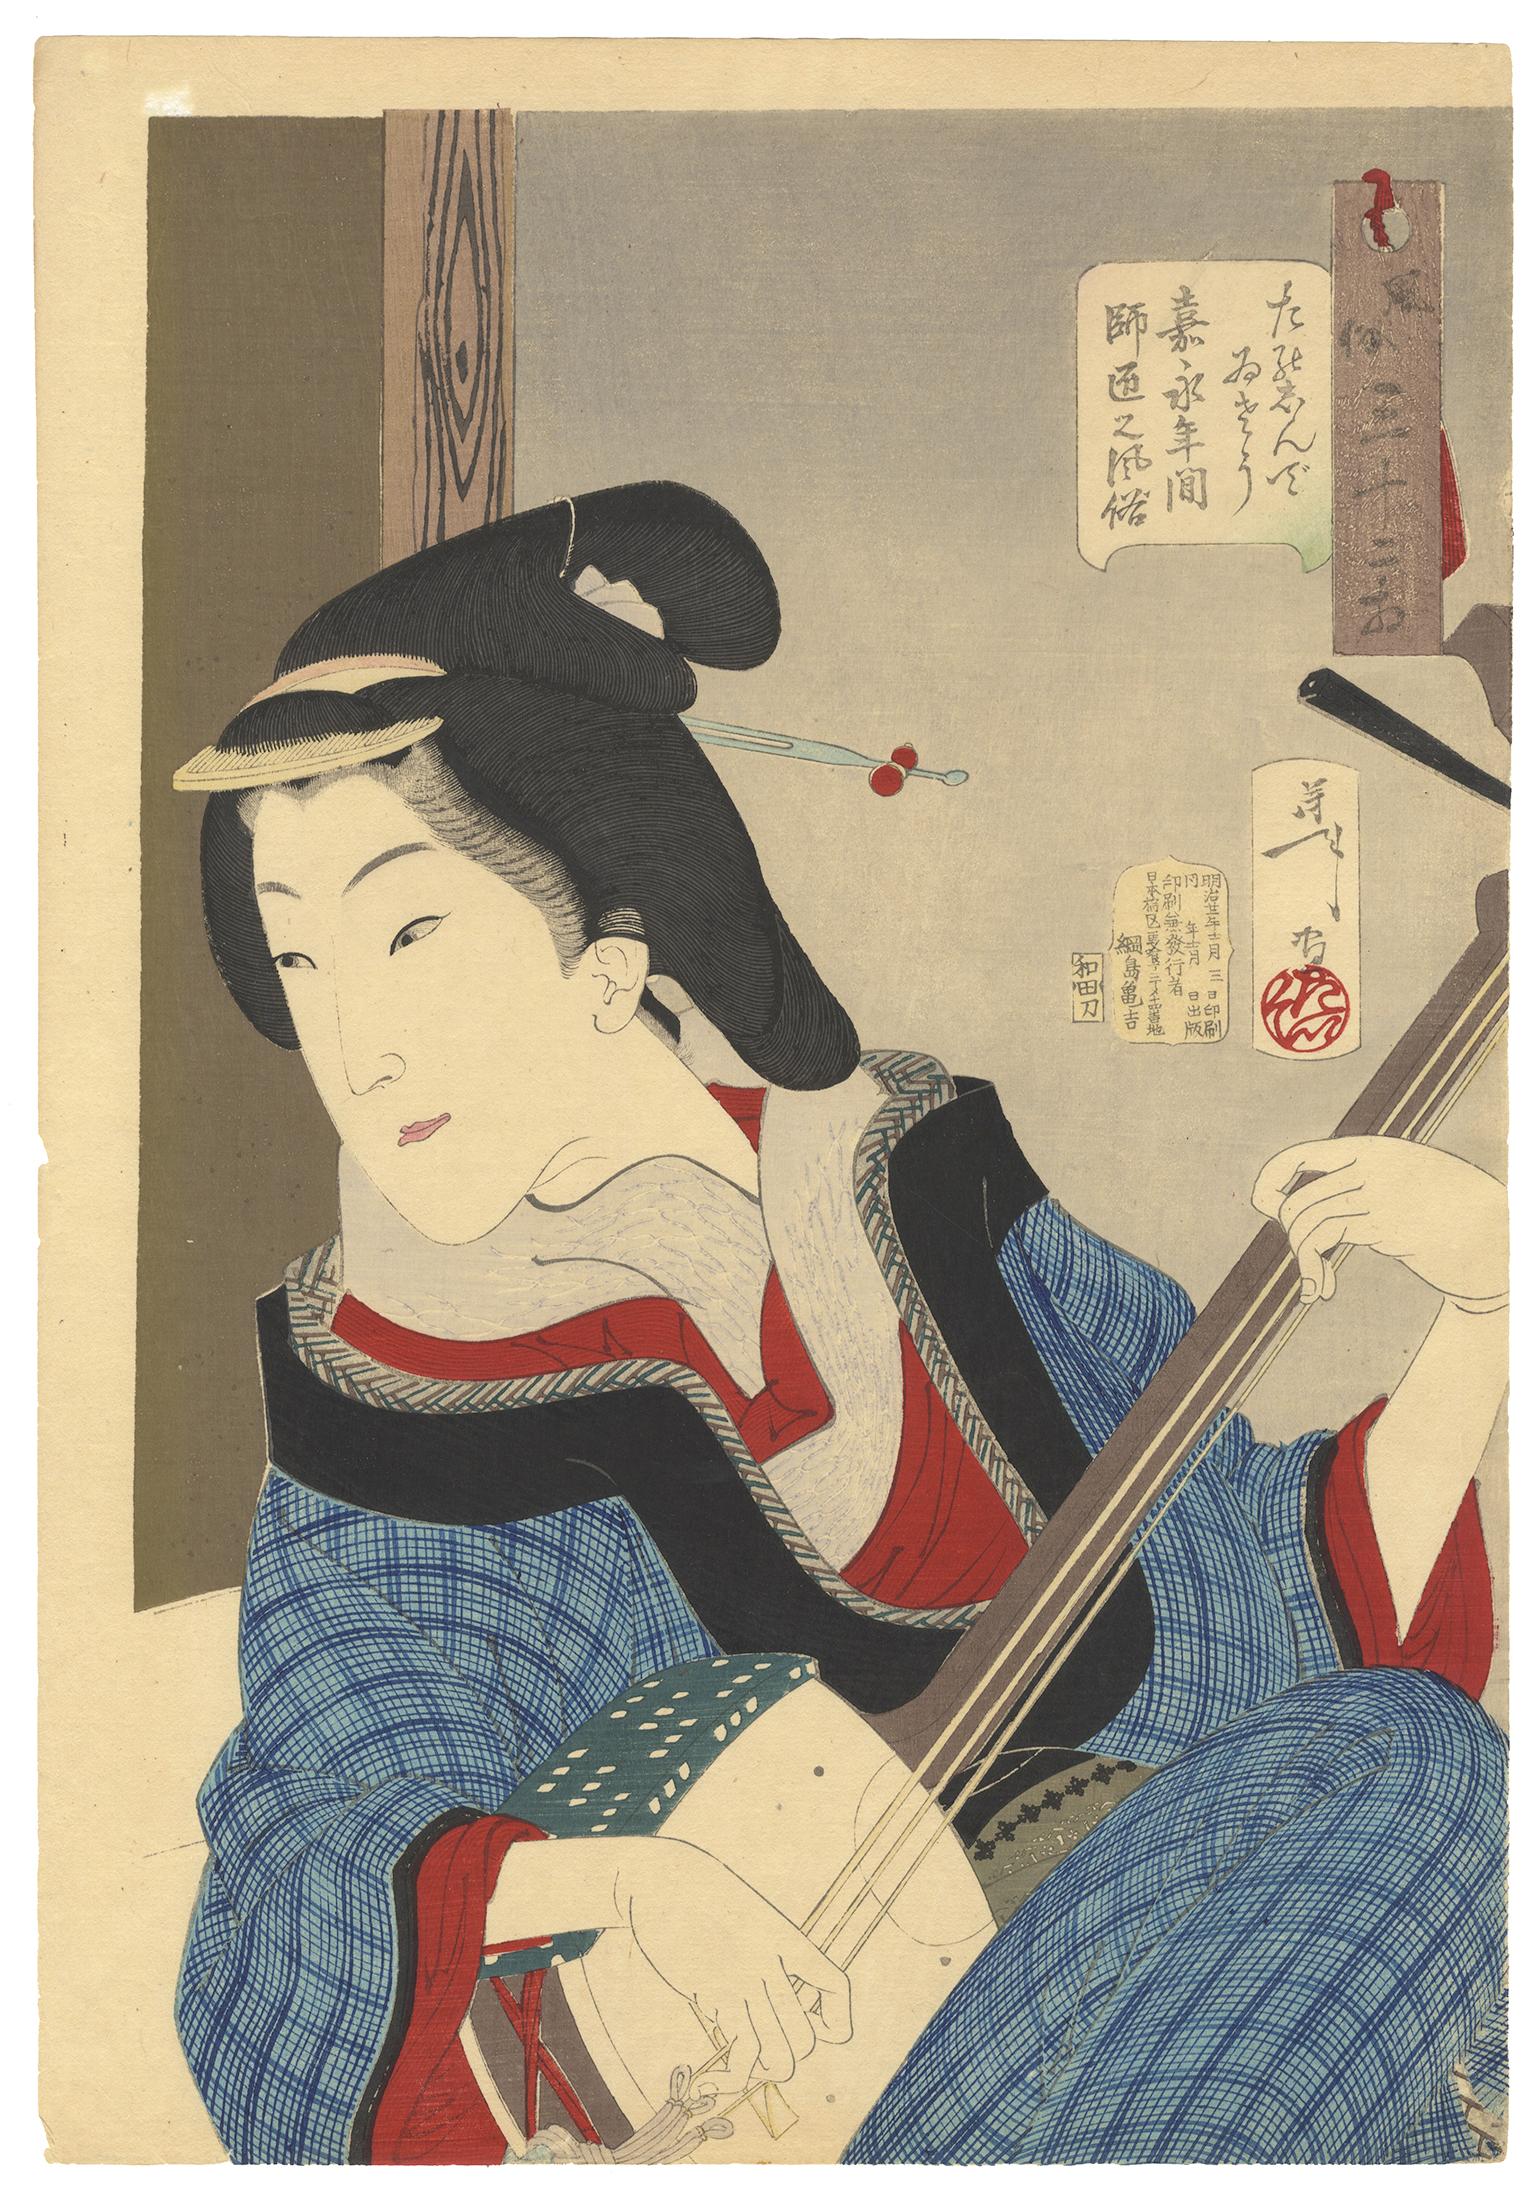 Tsukioka Yoshitoshi Portrait Print - Yoshitoshi, Ukiyo-e, Thirty-two Manners and Customs, Beauty, Shamisen, Enjoyment